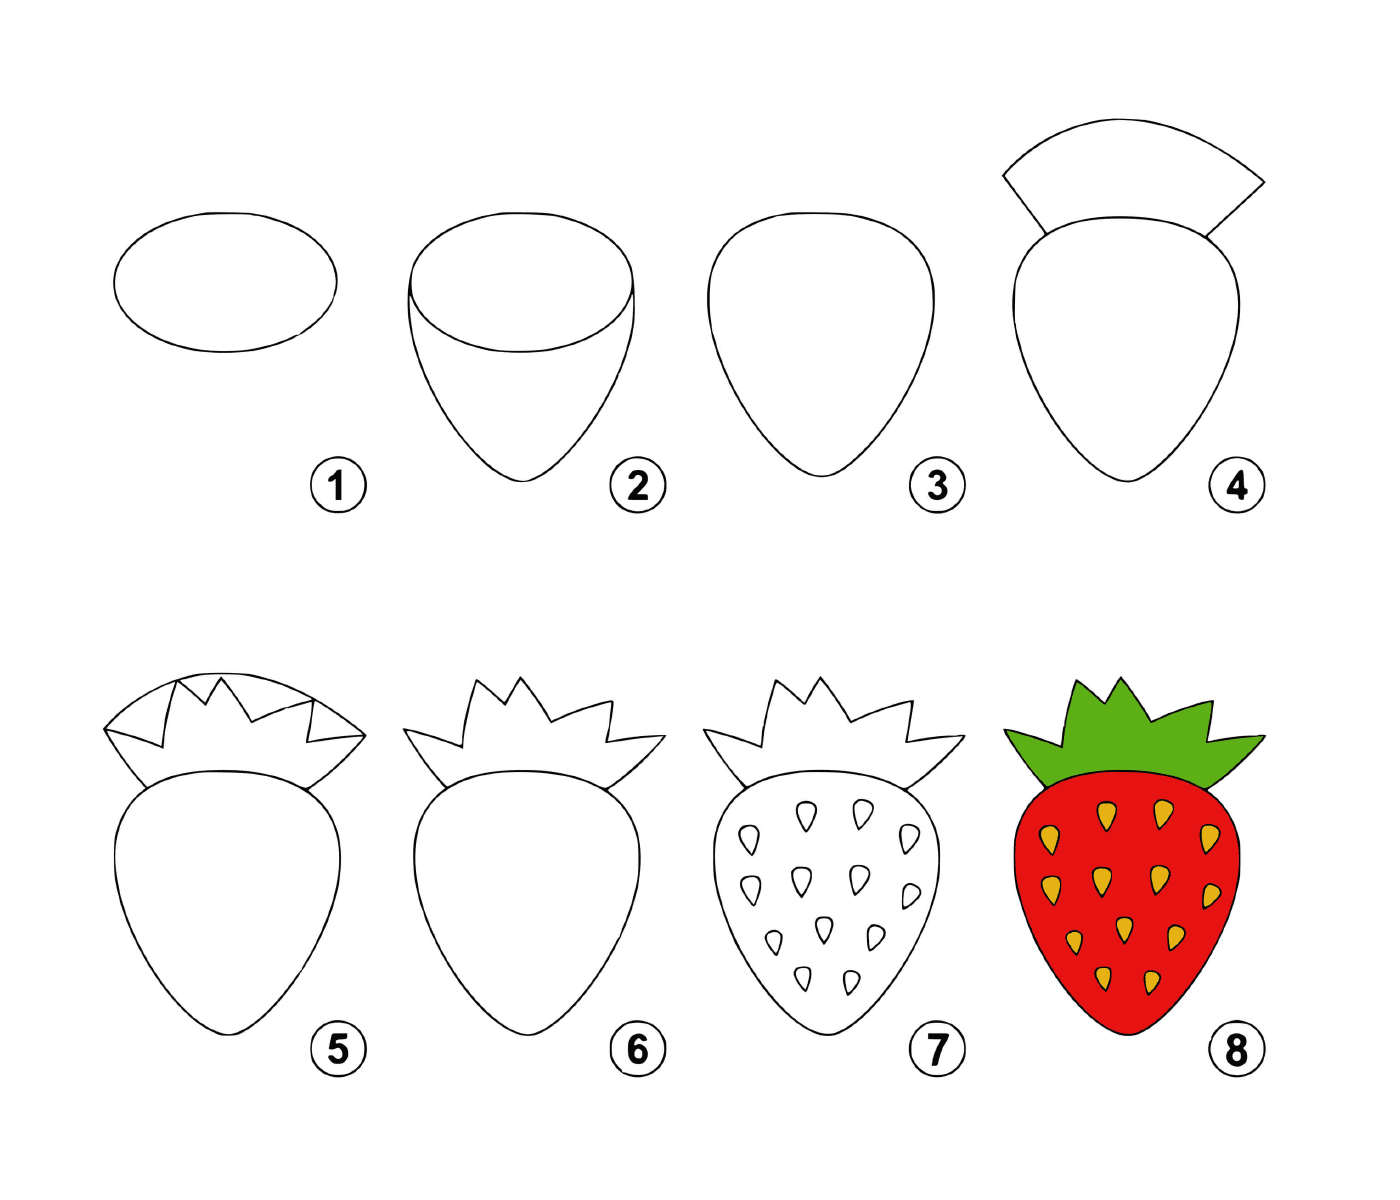  Cómo dibujar una fresa paso a paso 